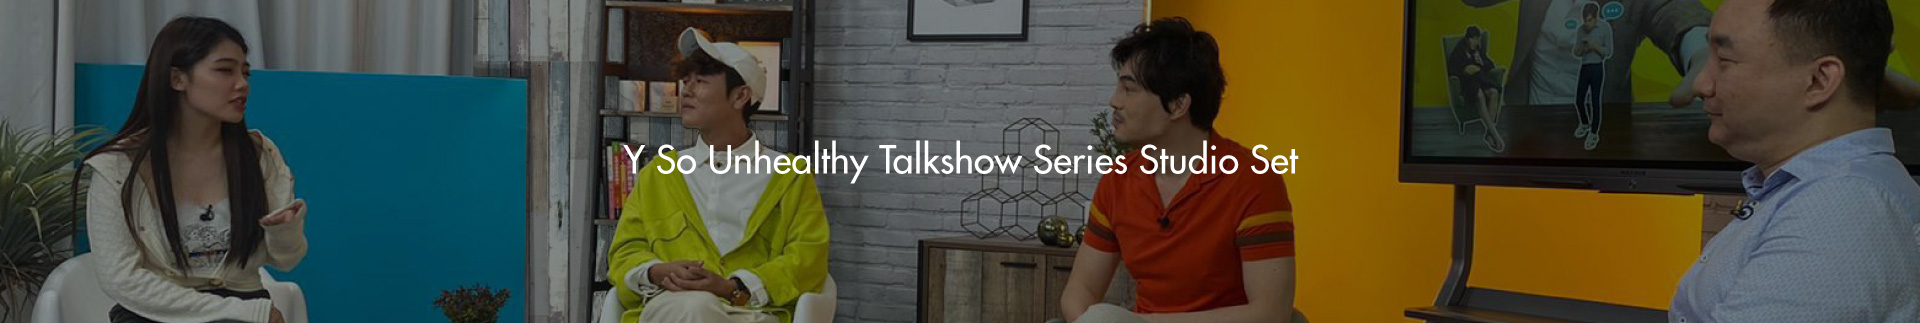 Y So Unhealthy Talkshow Series Studio Set